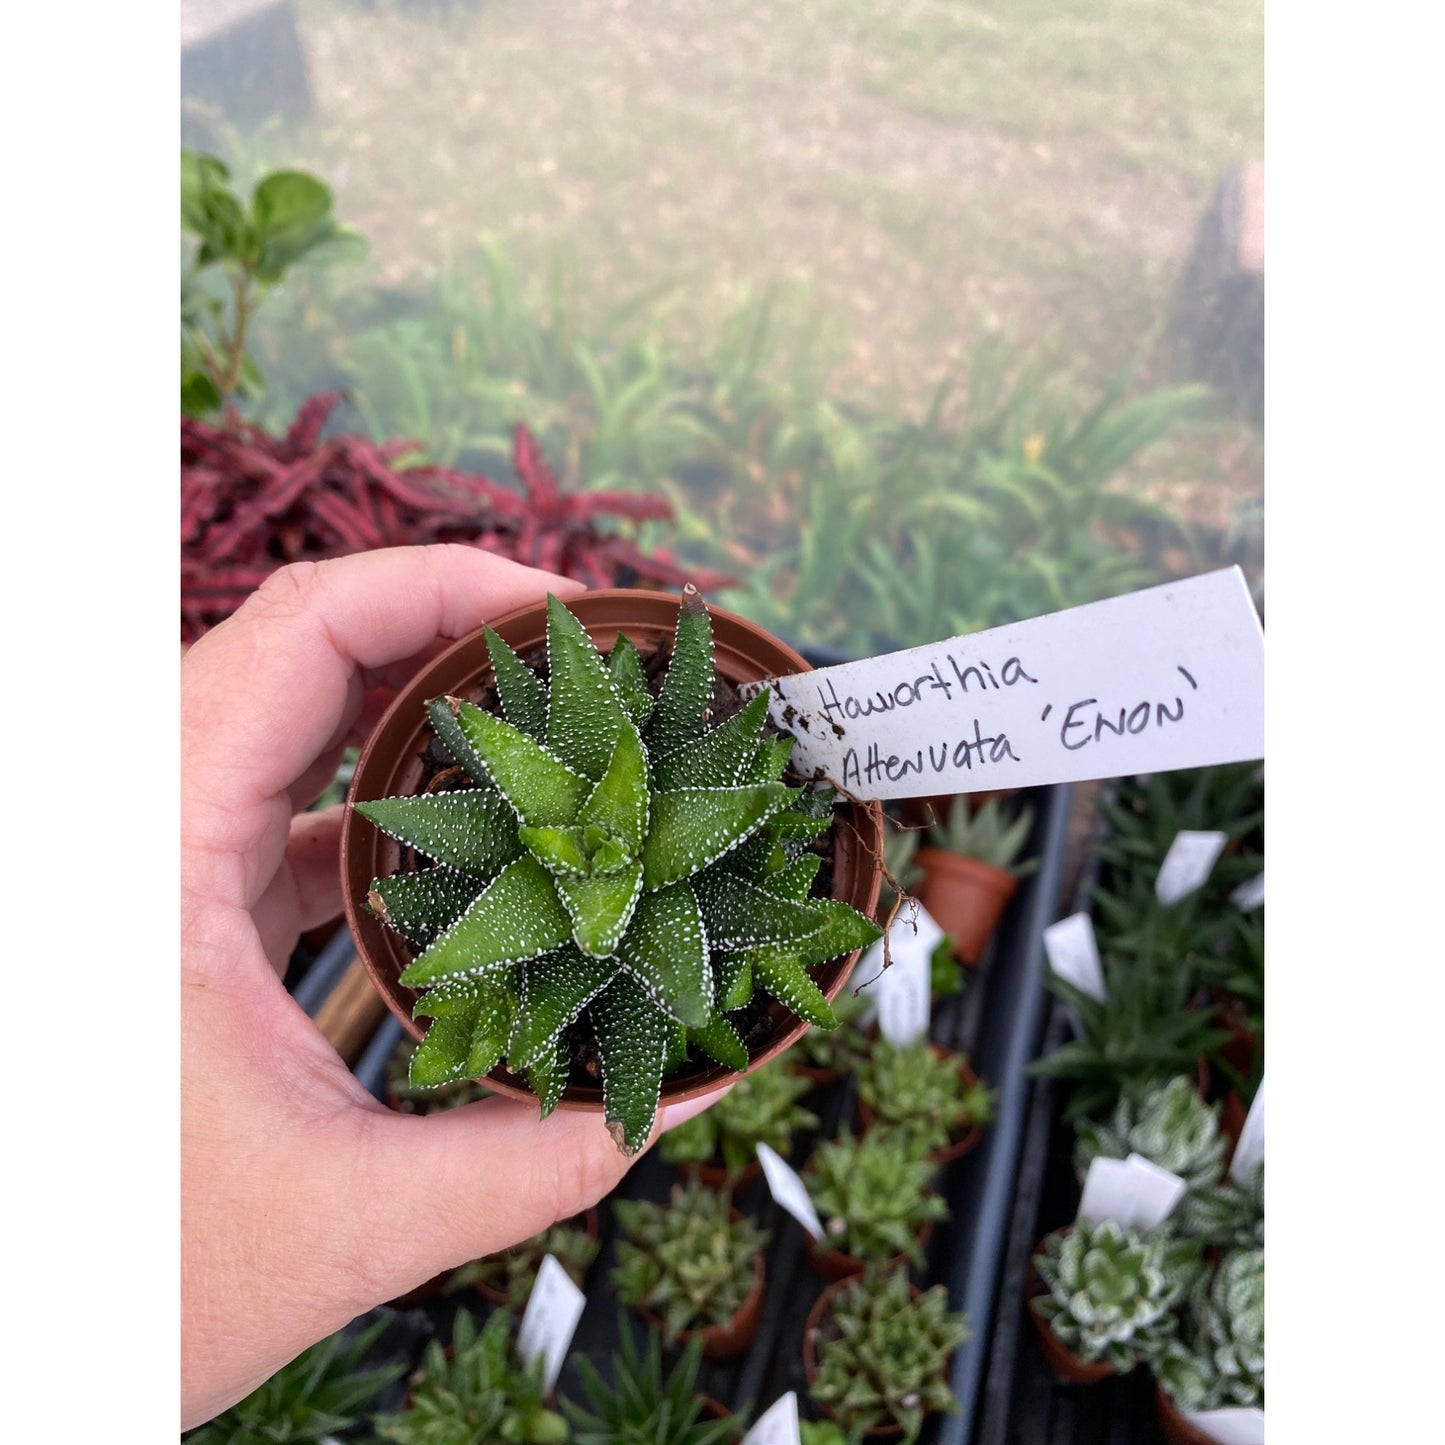 Succulent Haworthia Attenuata Enon 3” pot Live Plant